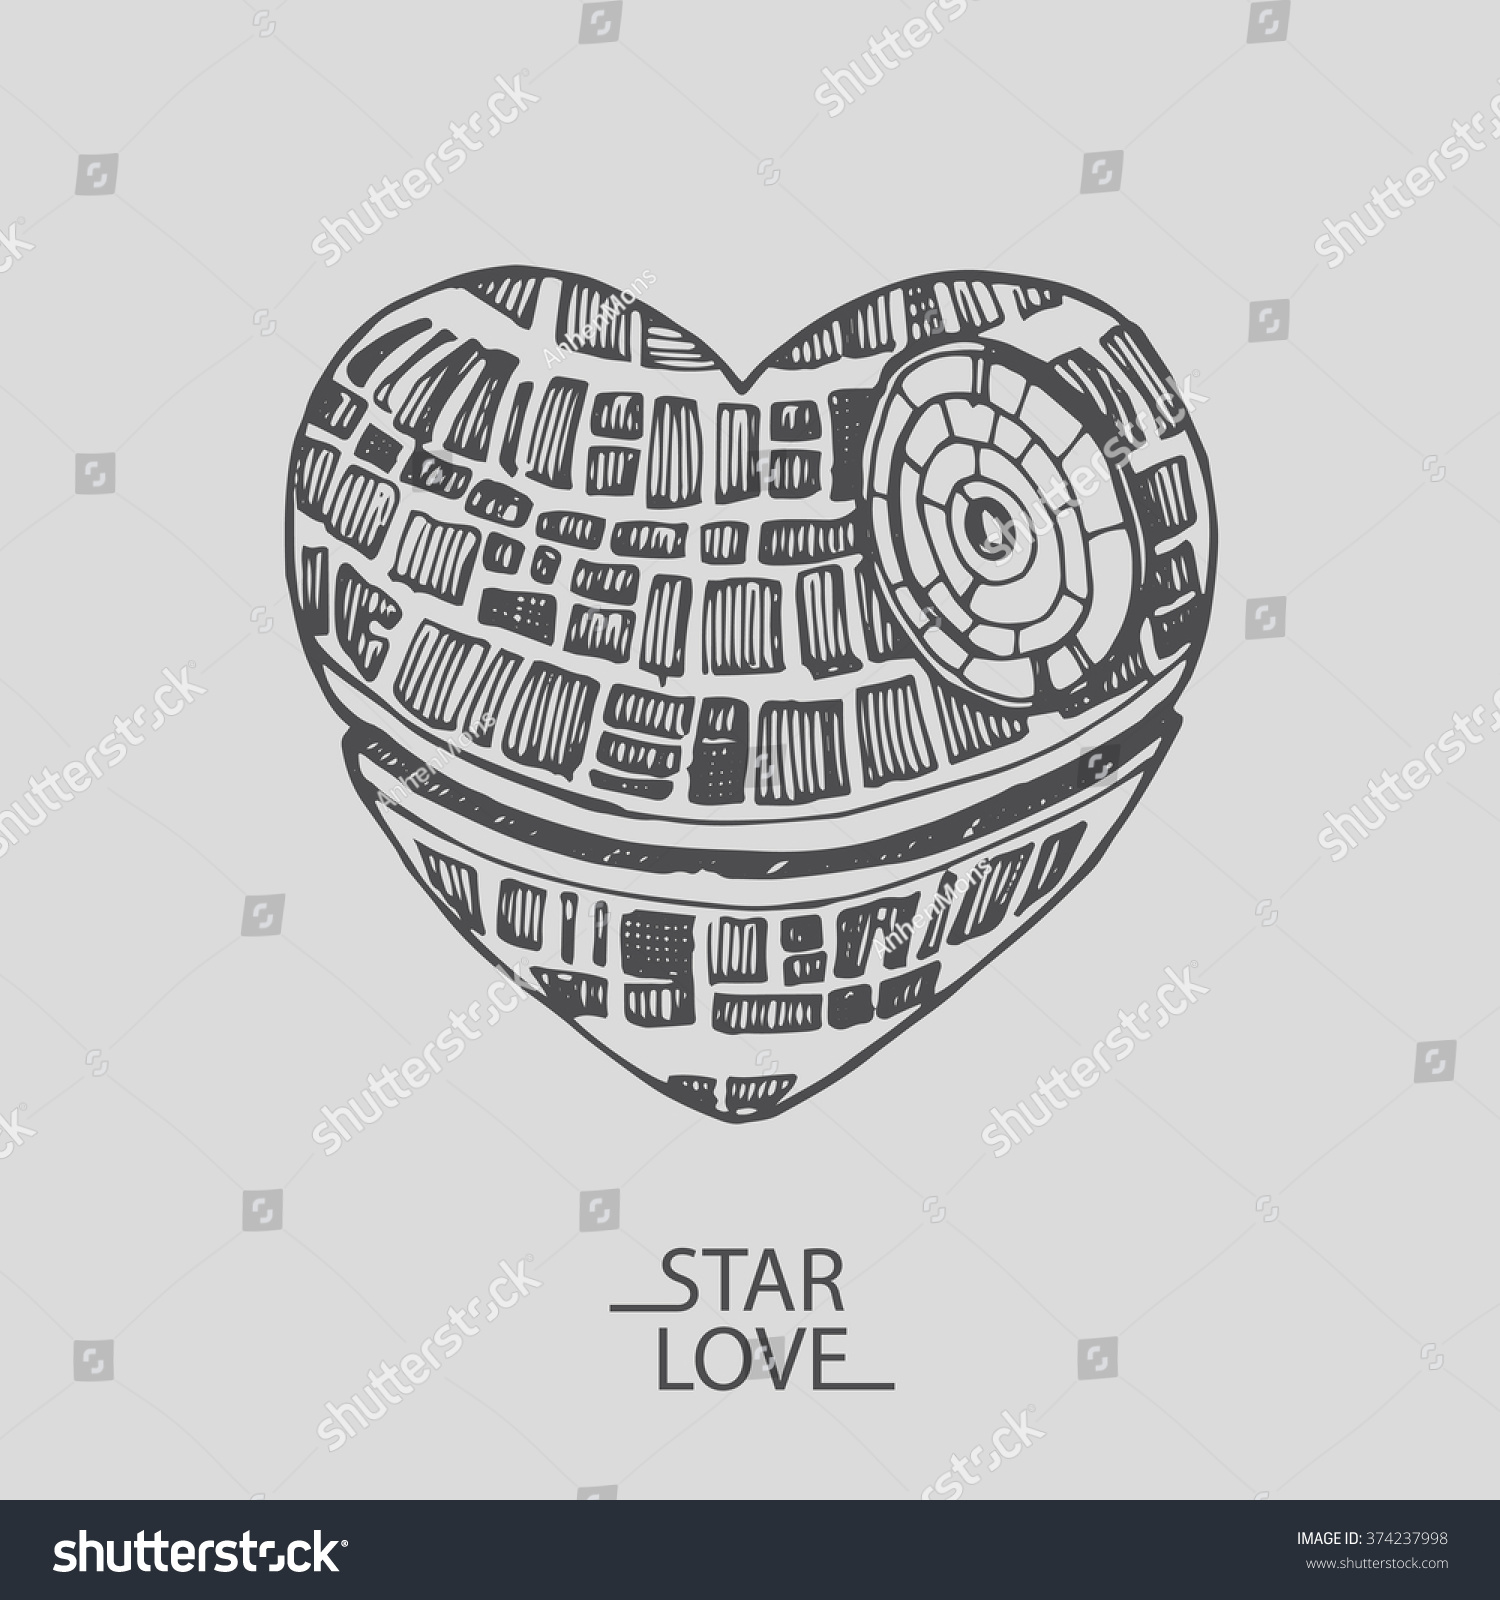 Sketch Illustration Love Heart Star Wars Stock Vector 374237998 - Shutterstock1500 x 1600